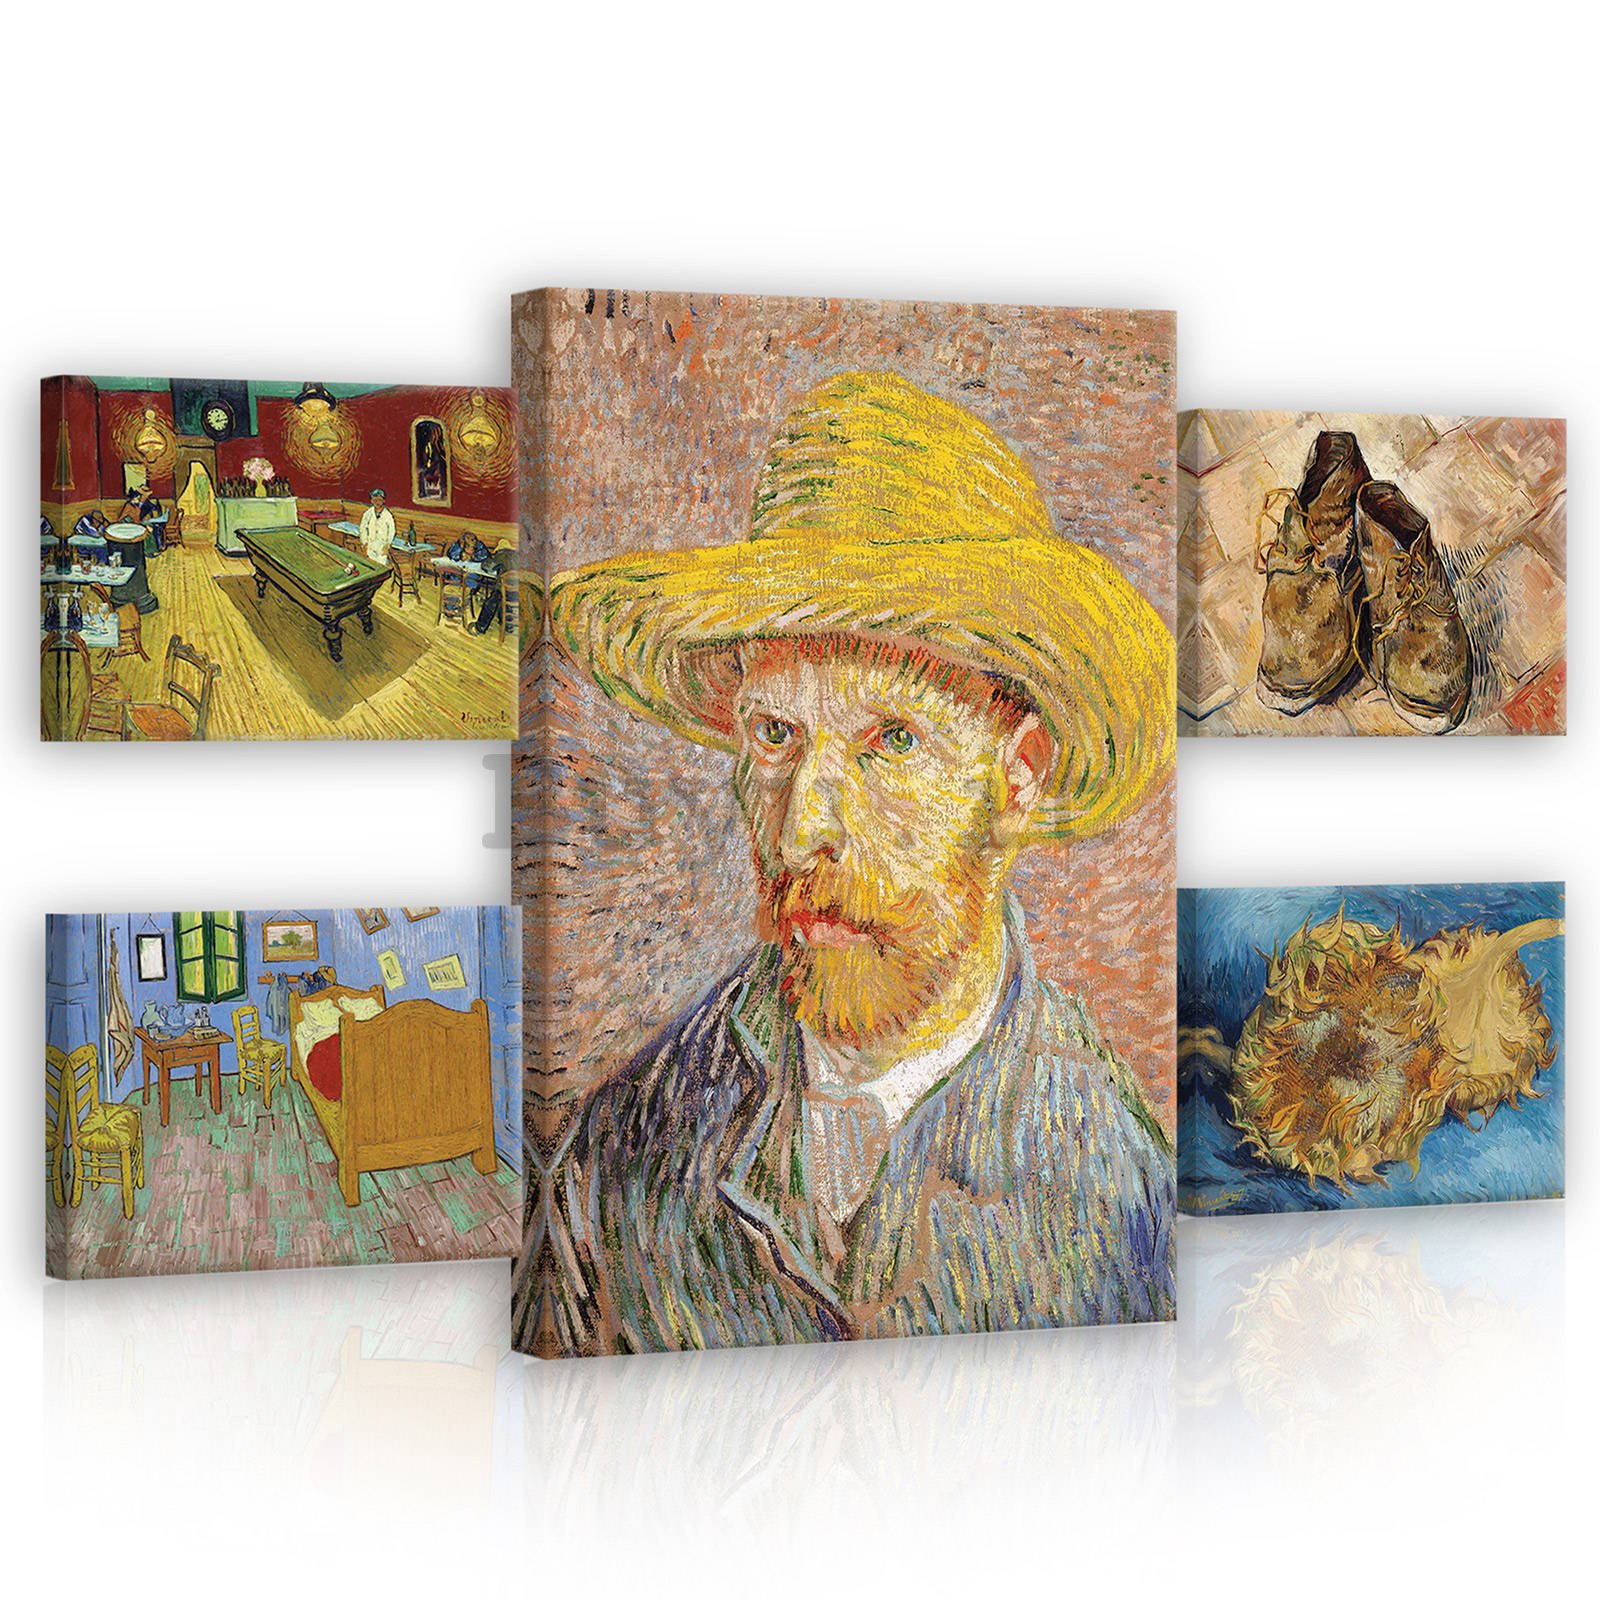 Quadro su tela: Vincent van Gogh - set 1pz 70x50 cm e 4pz 32,4x22,8 cm